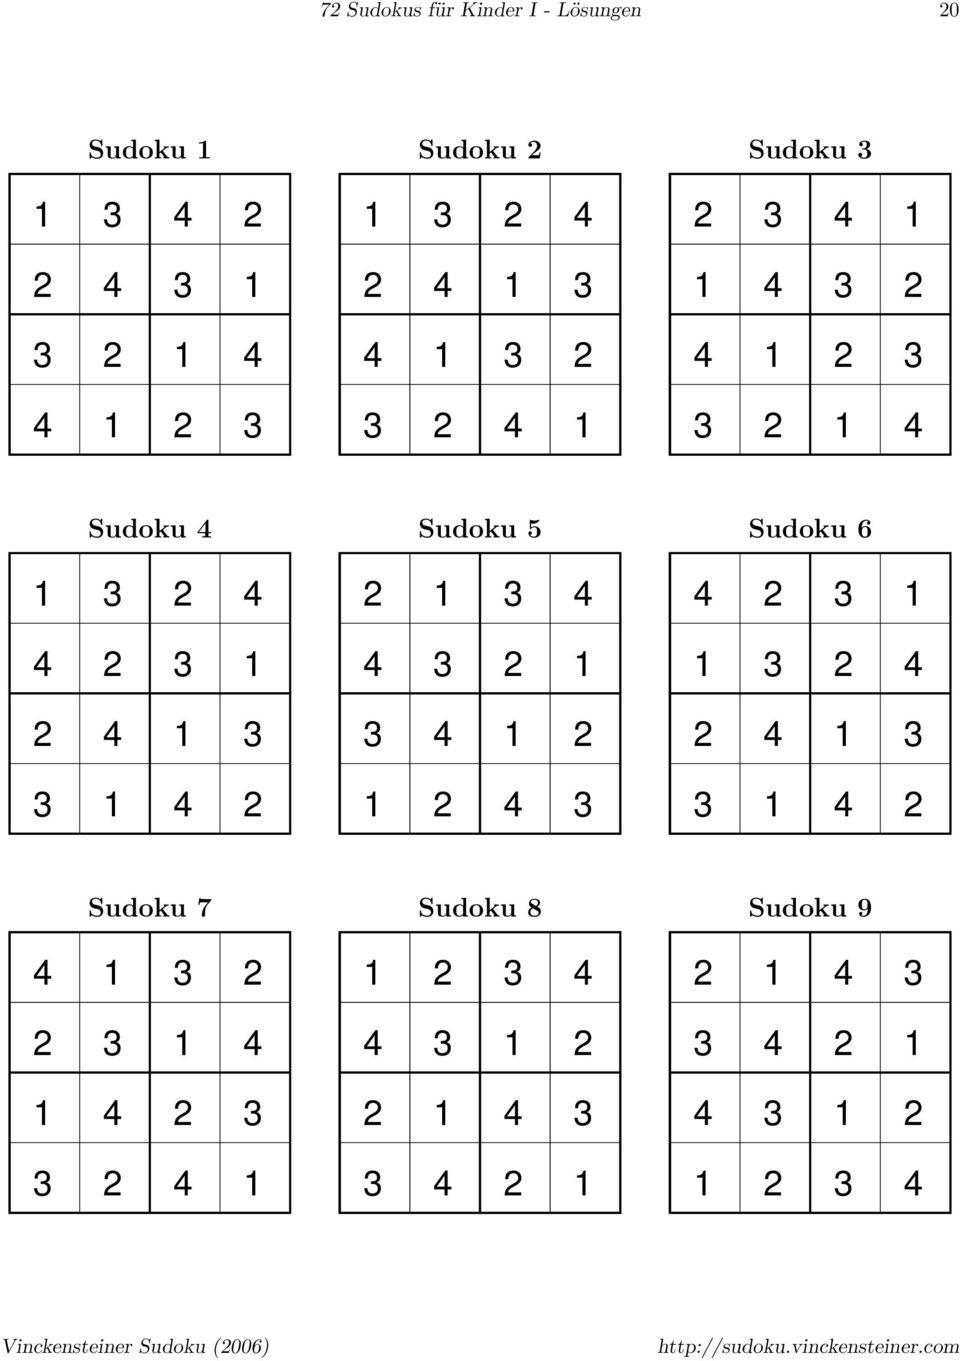 3 3 3 3 Sudoku 5 3 3 3 3 Sudoku 6 3 3 3 3